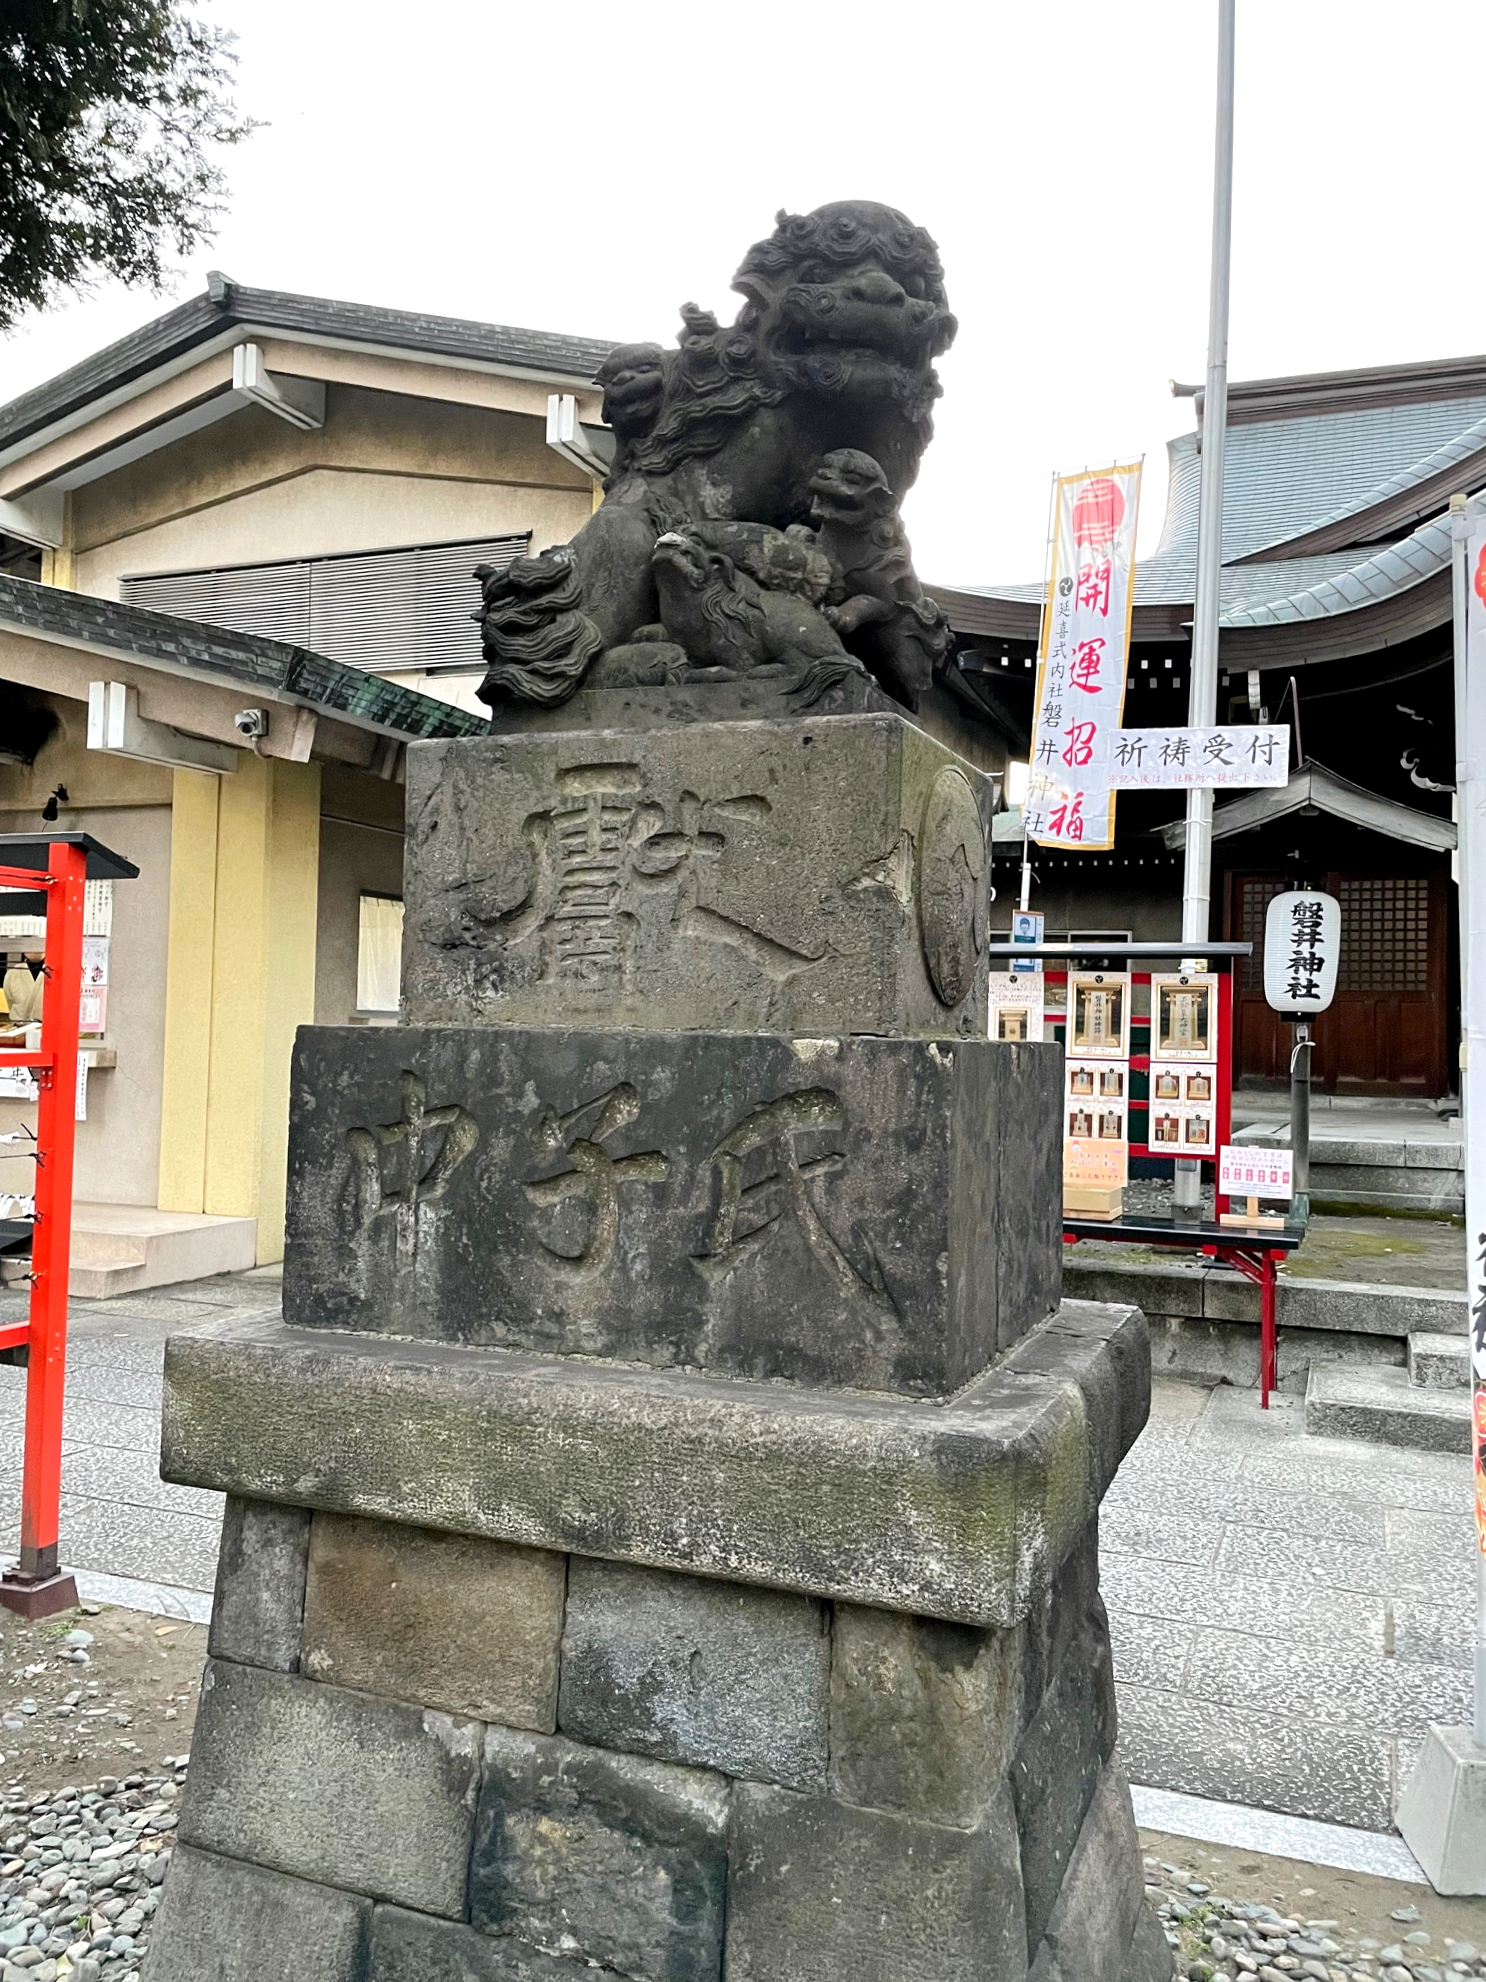  磐井神社の狛犬は子宝の象徴